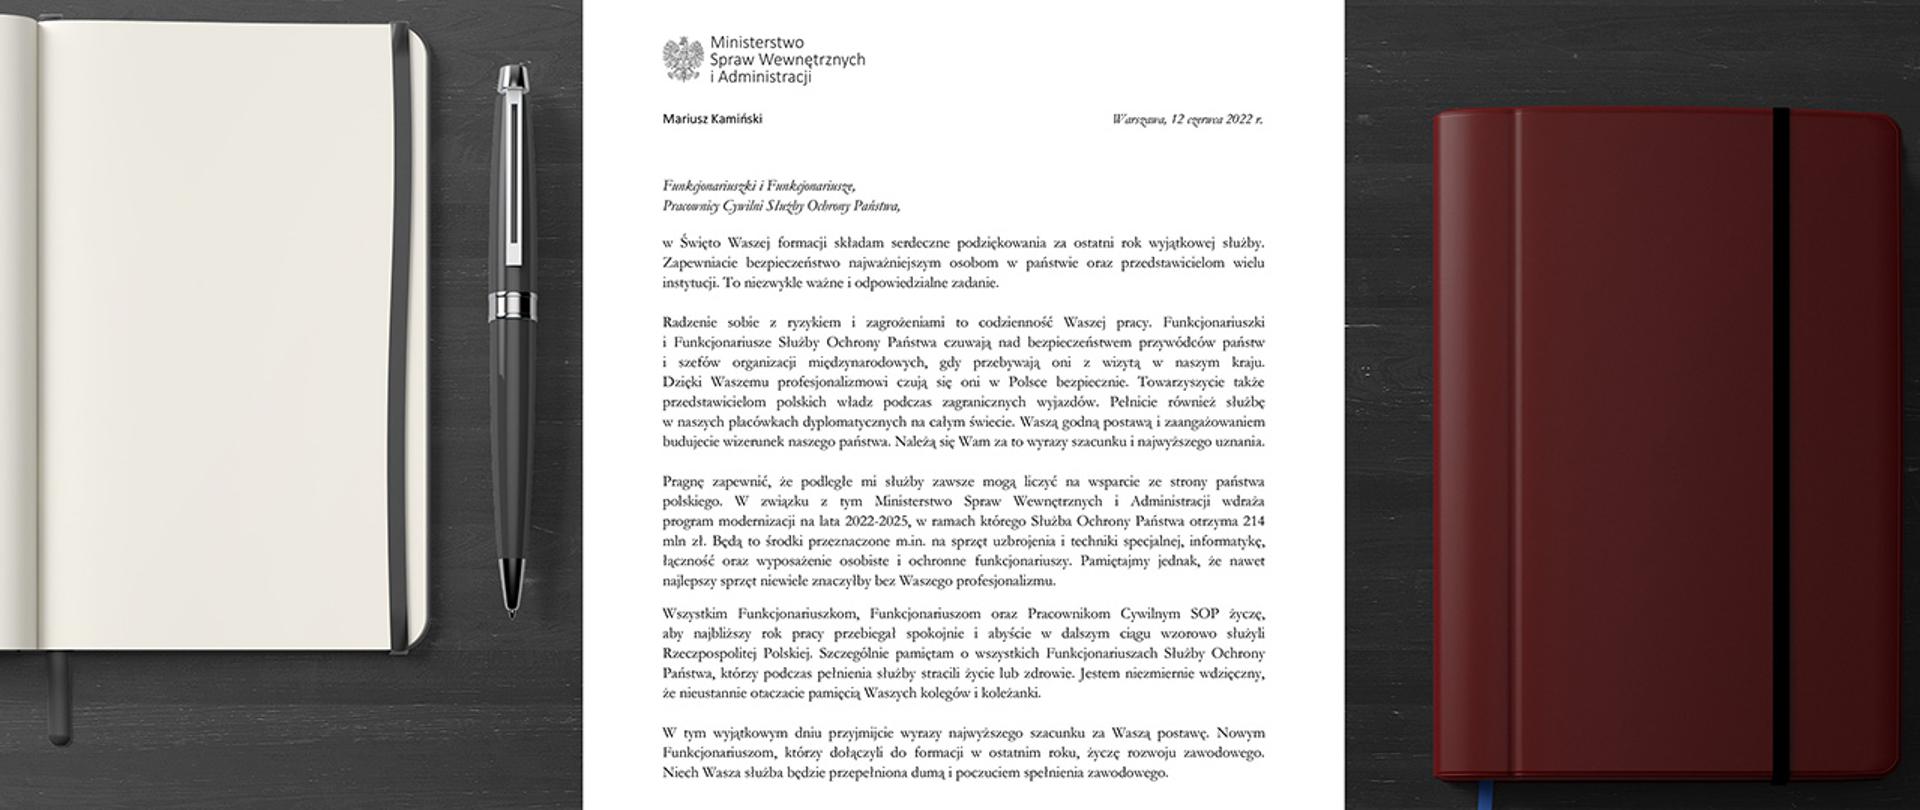 List Ministra Mariusza Kamińskiego do Funkcjonariuszek i Funkcjonariuszy oraz Pracowników Cywilnych Służby Ochrony Państwa.